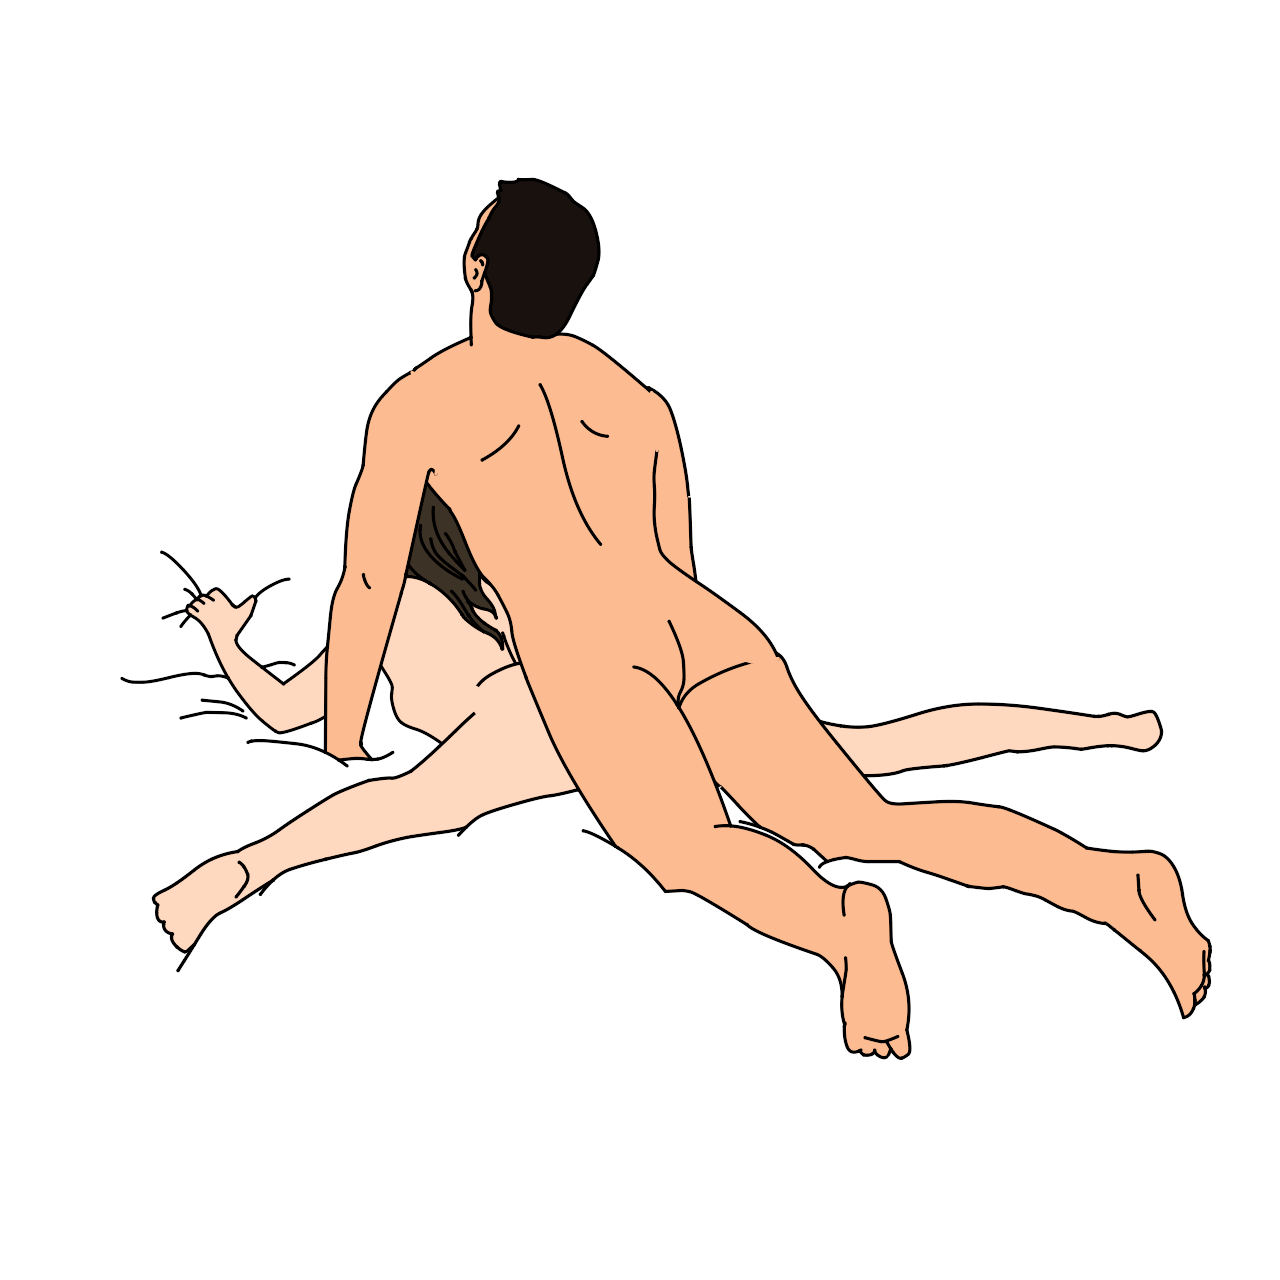 Sex position pix